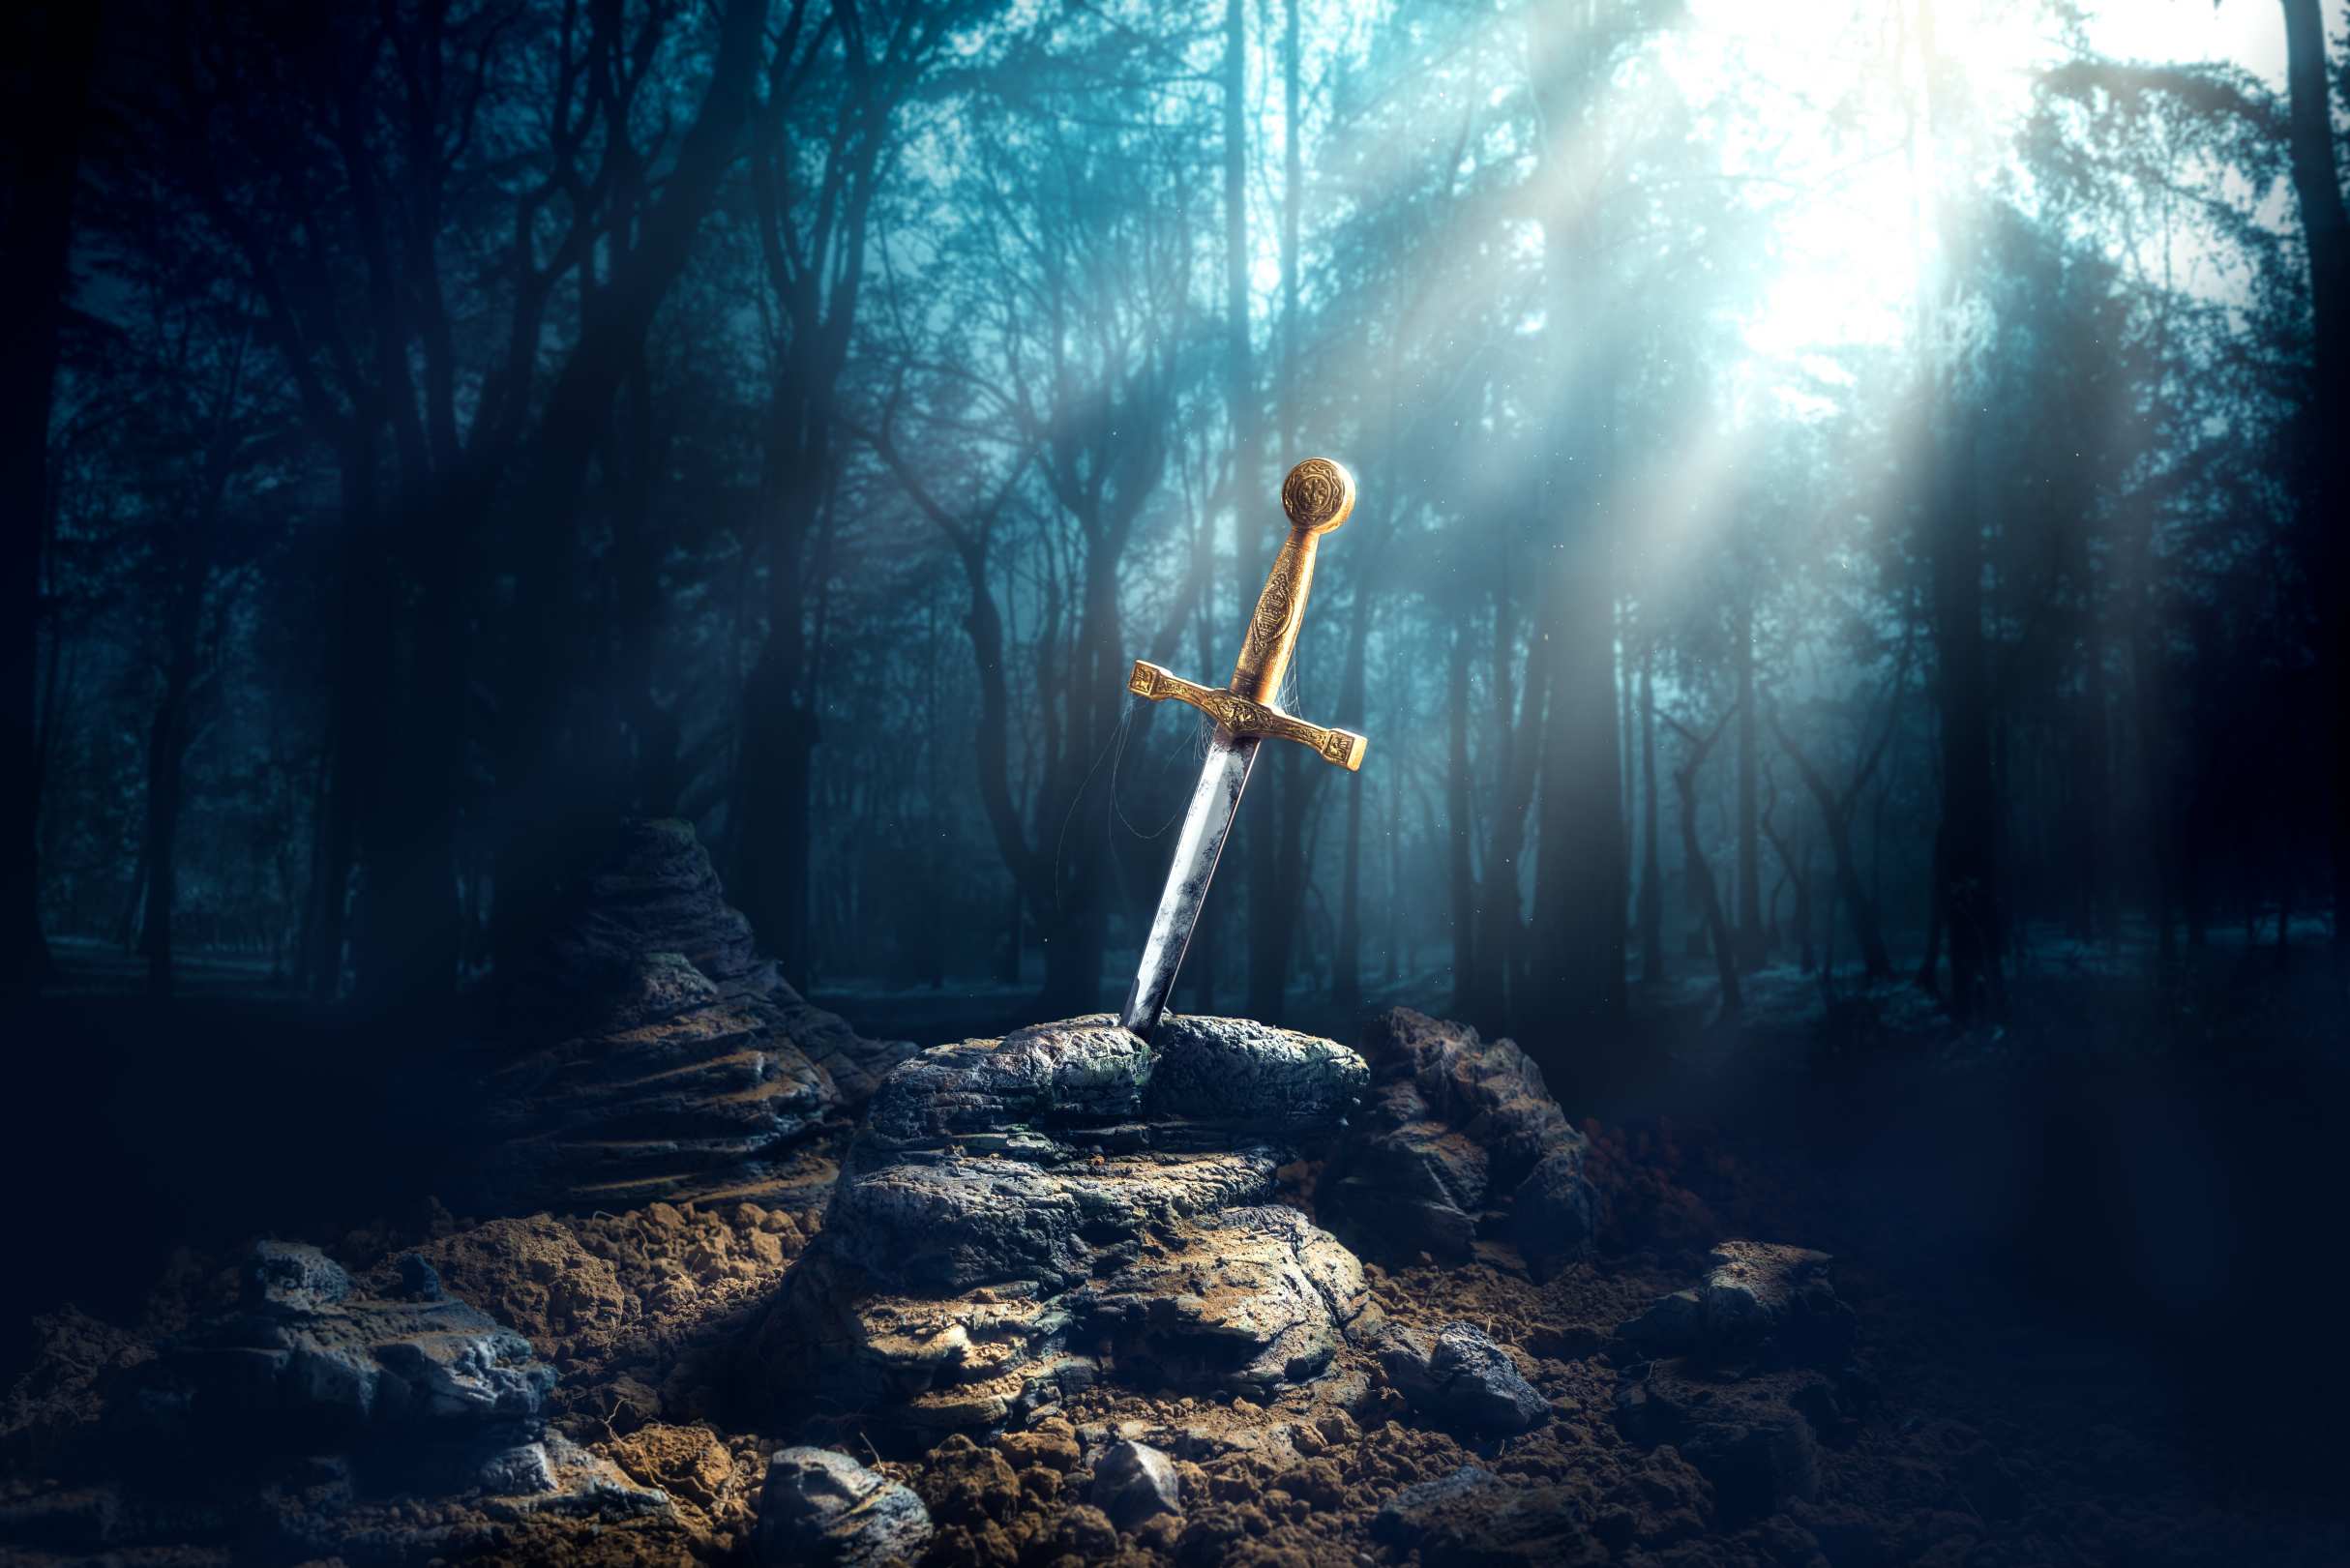 Excalibur, pedang dina batu jeung sinar lampu sarta specs lebu di leuweung poék